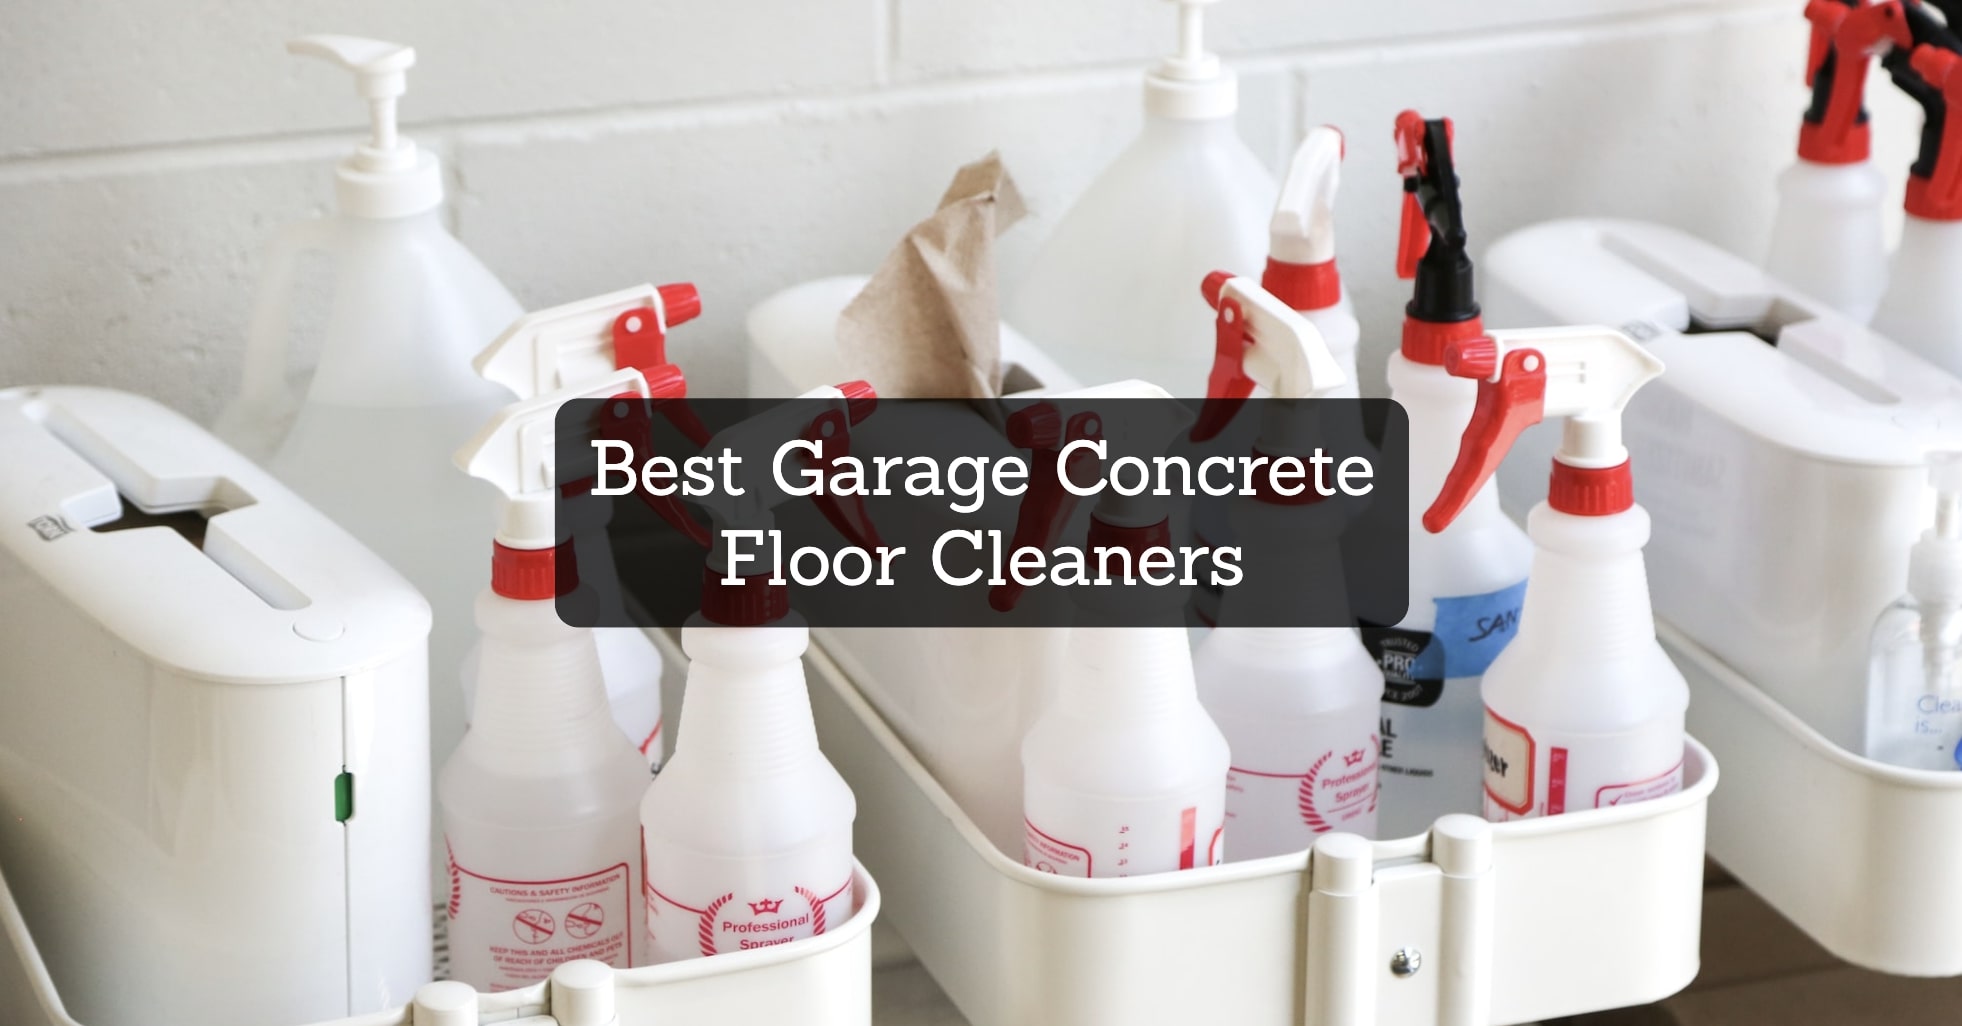 Best-Garage-Concrete-Floor-Cleaners